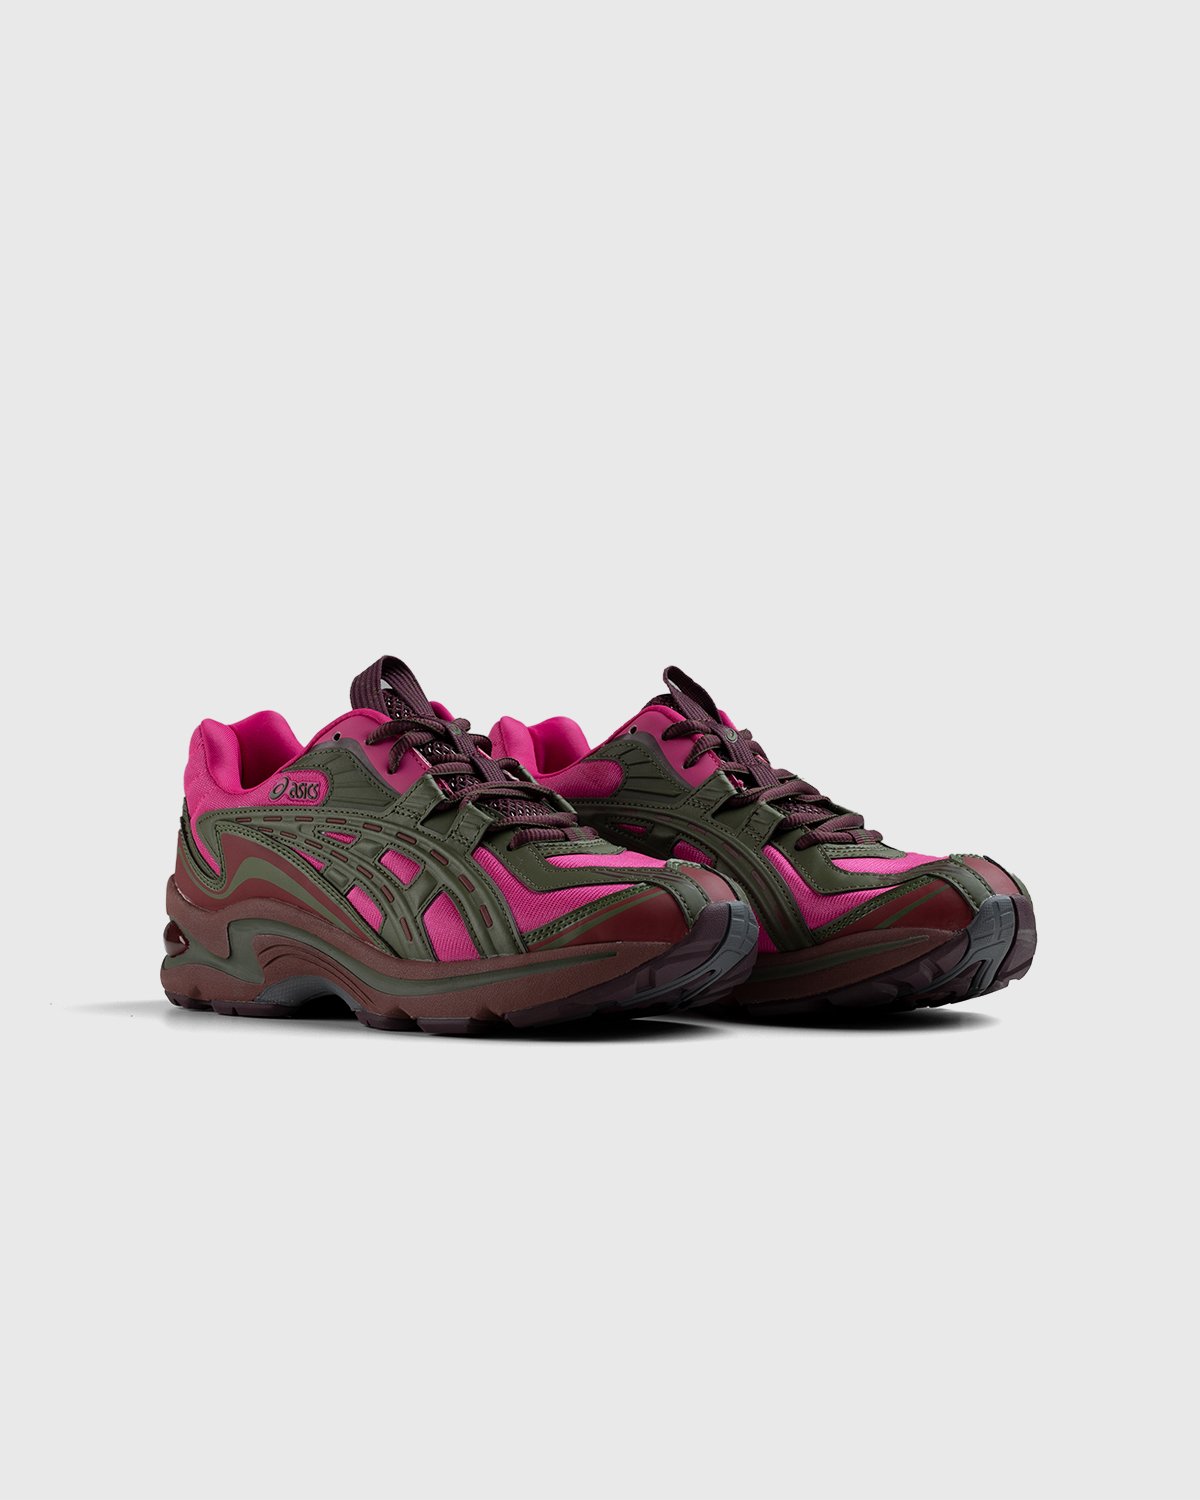 asics - FB1-S Gel-Preleus Pink Rave/Olive Canvas - Footwear - Red - Image 2